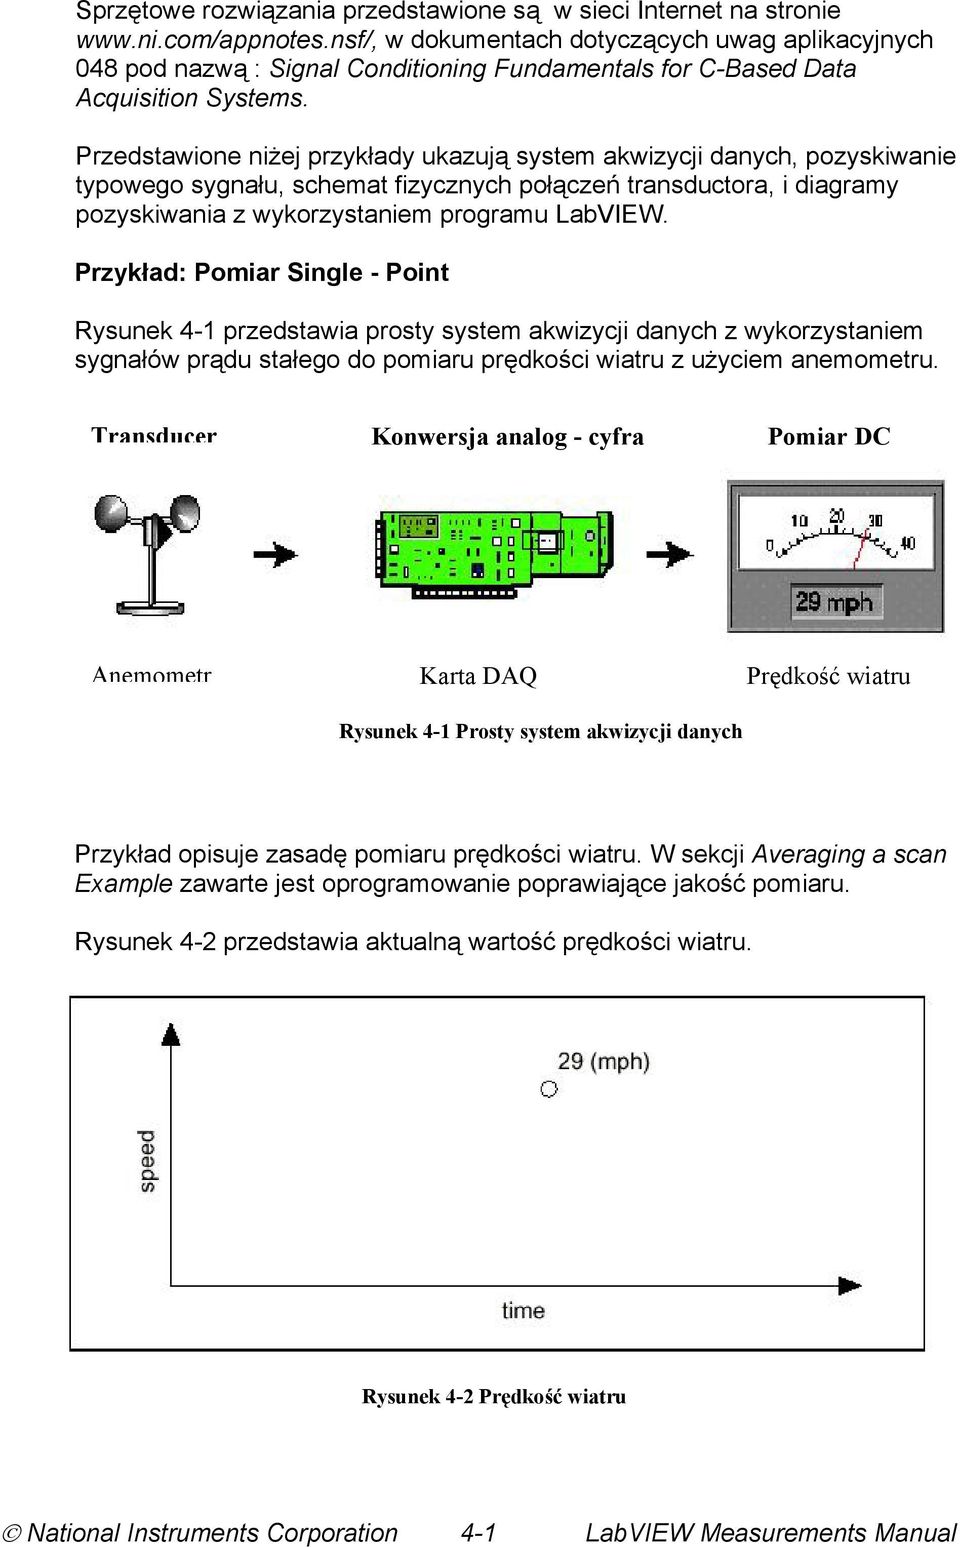 Przedstawione niżej przykłady ukazują system akwizycji danych, pozyskiwanie typowego sygnału, schemat fizycznych połączeń transductora, i diagramy pozyskiwania z wykorzystaniem programu LabVIEW.